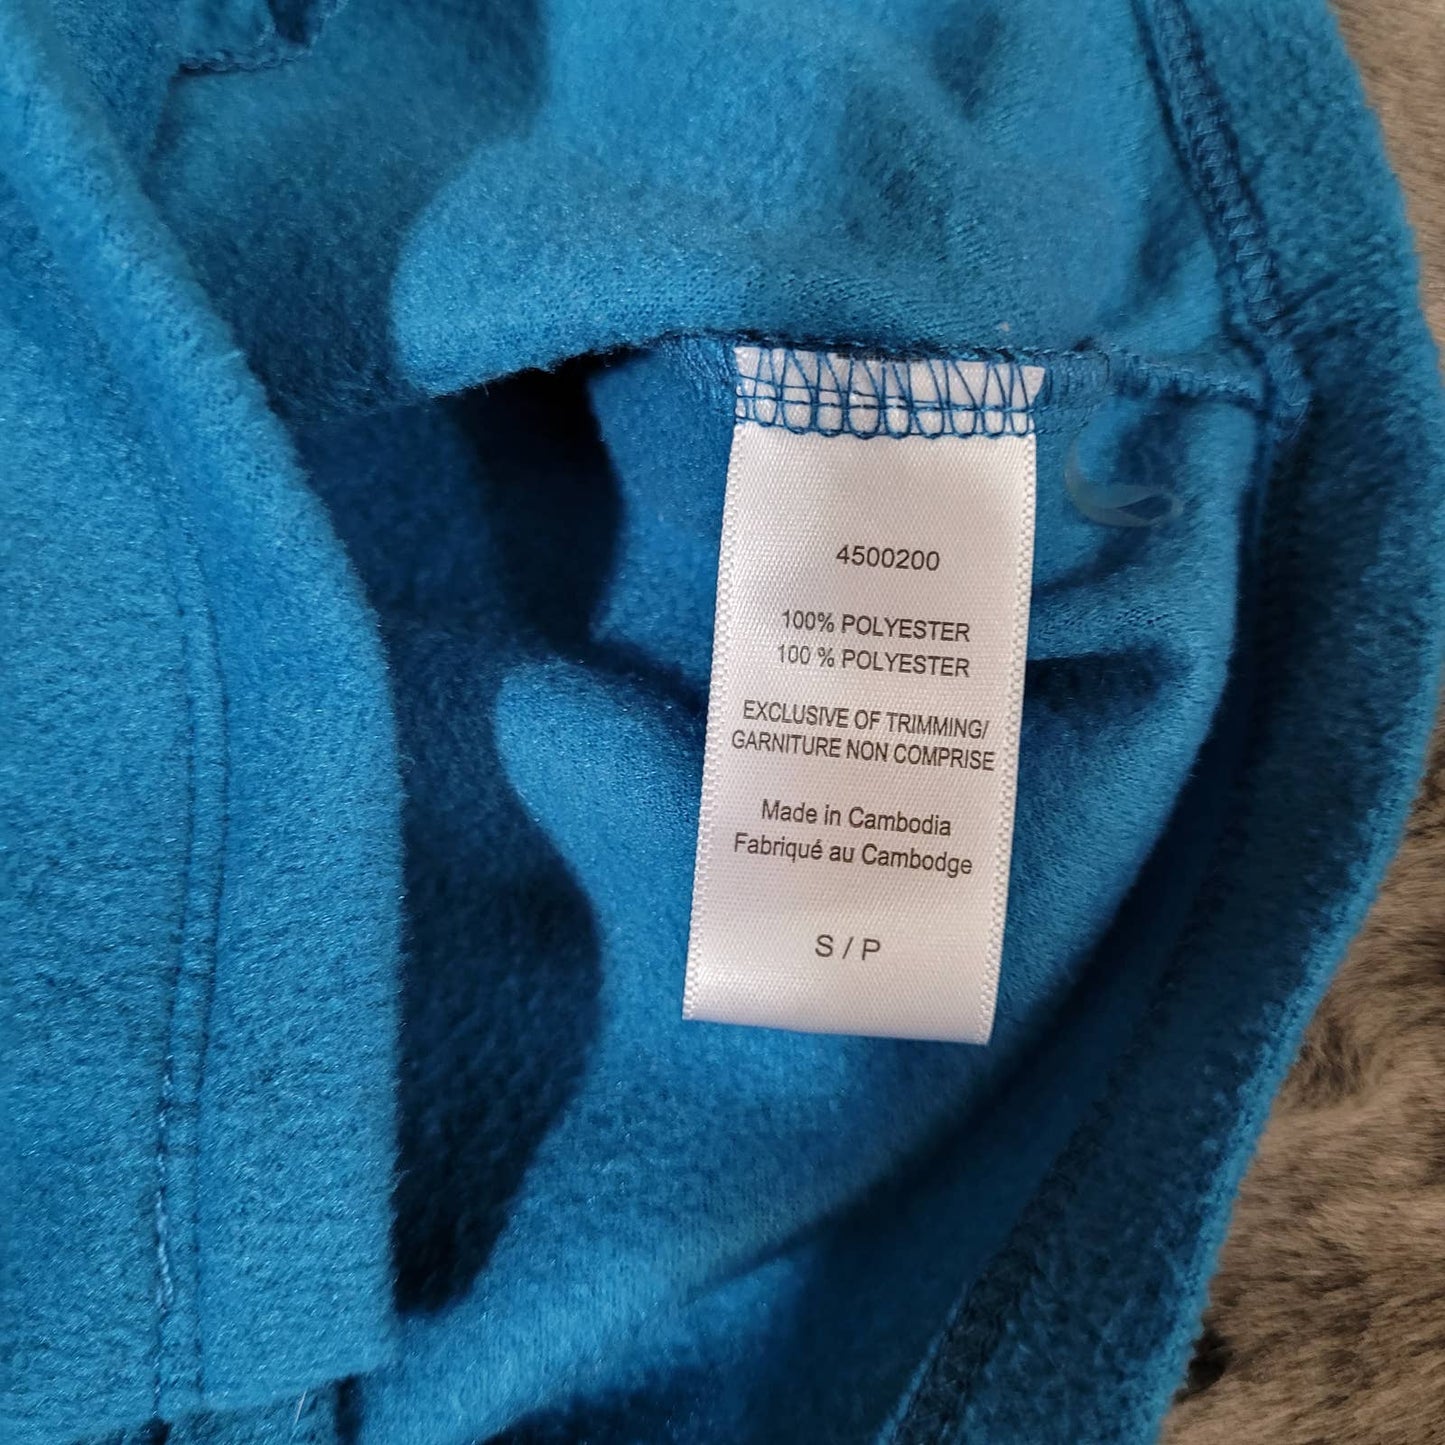 Carole Hochman Blue Fleece Zip Up Sweater - Size Small